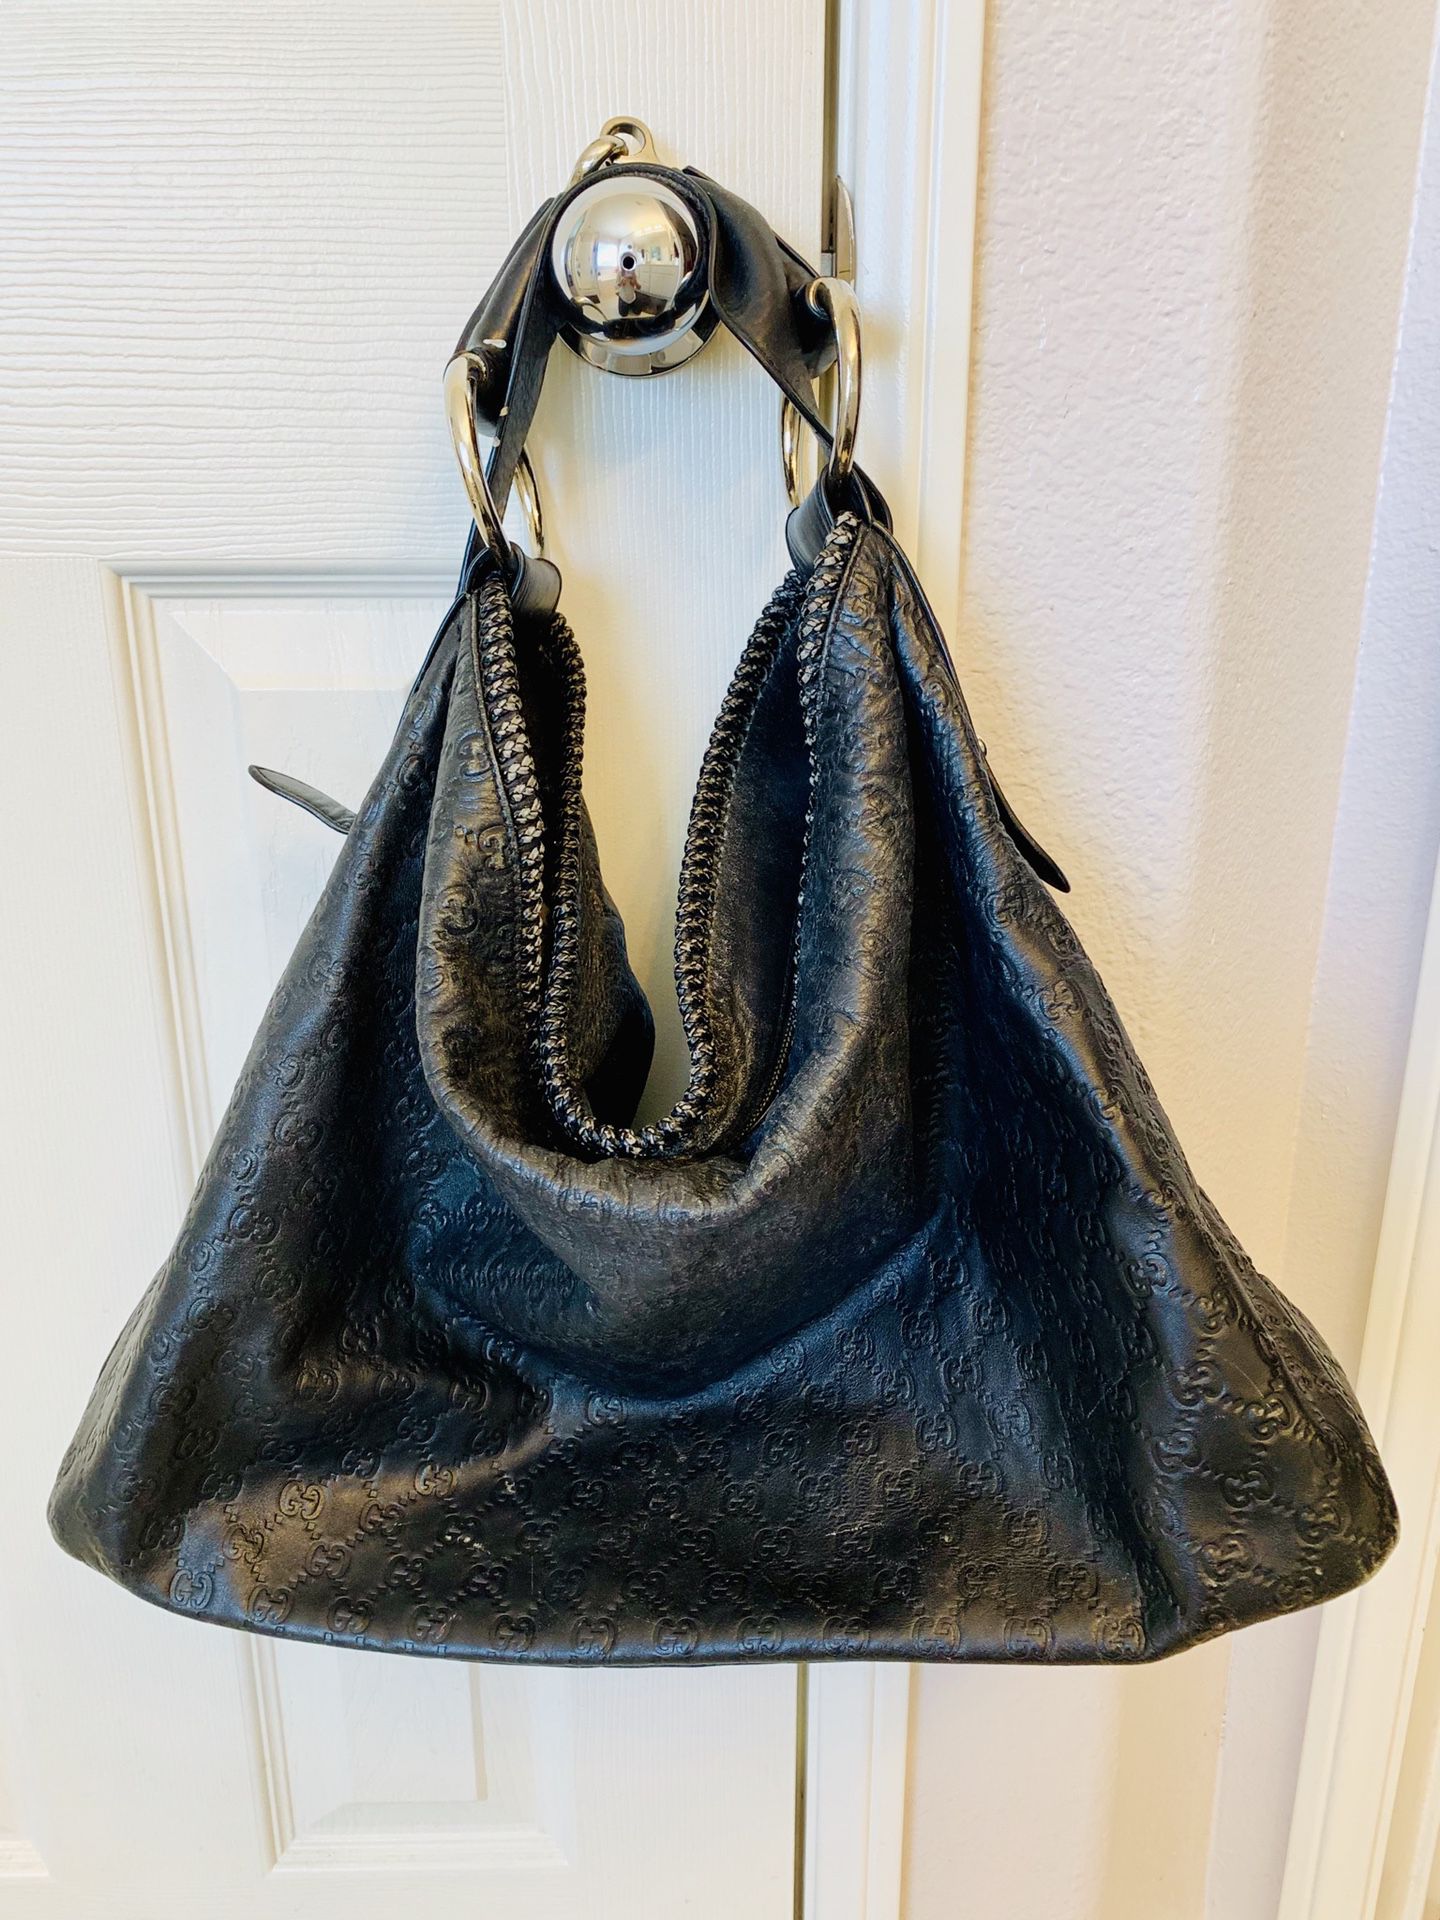 Faux Leather GG Black Hobo Tote Purse / Handbag / Shoulder Bag